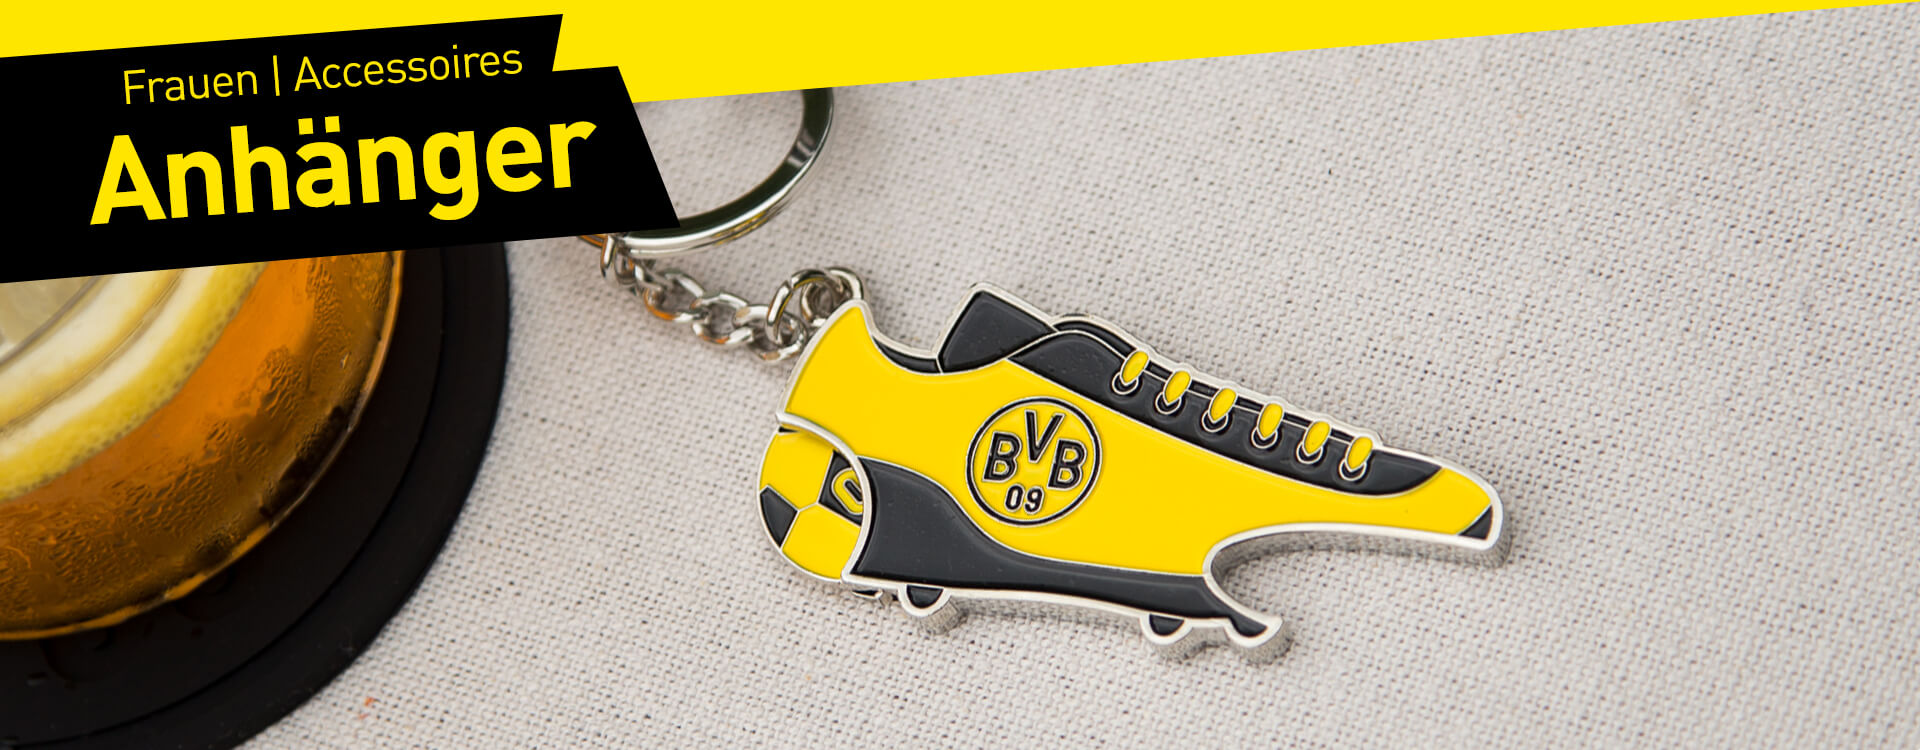 5x 80er Jahre Vintage BVB 09 Borussia Dortmund Schlüsselanhänger Metall Anhänger 